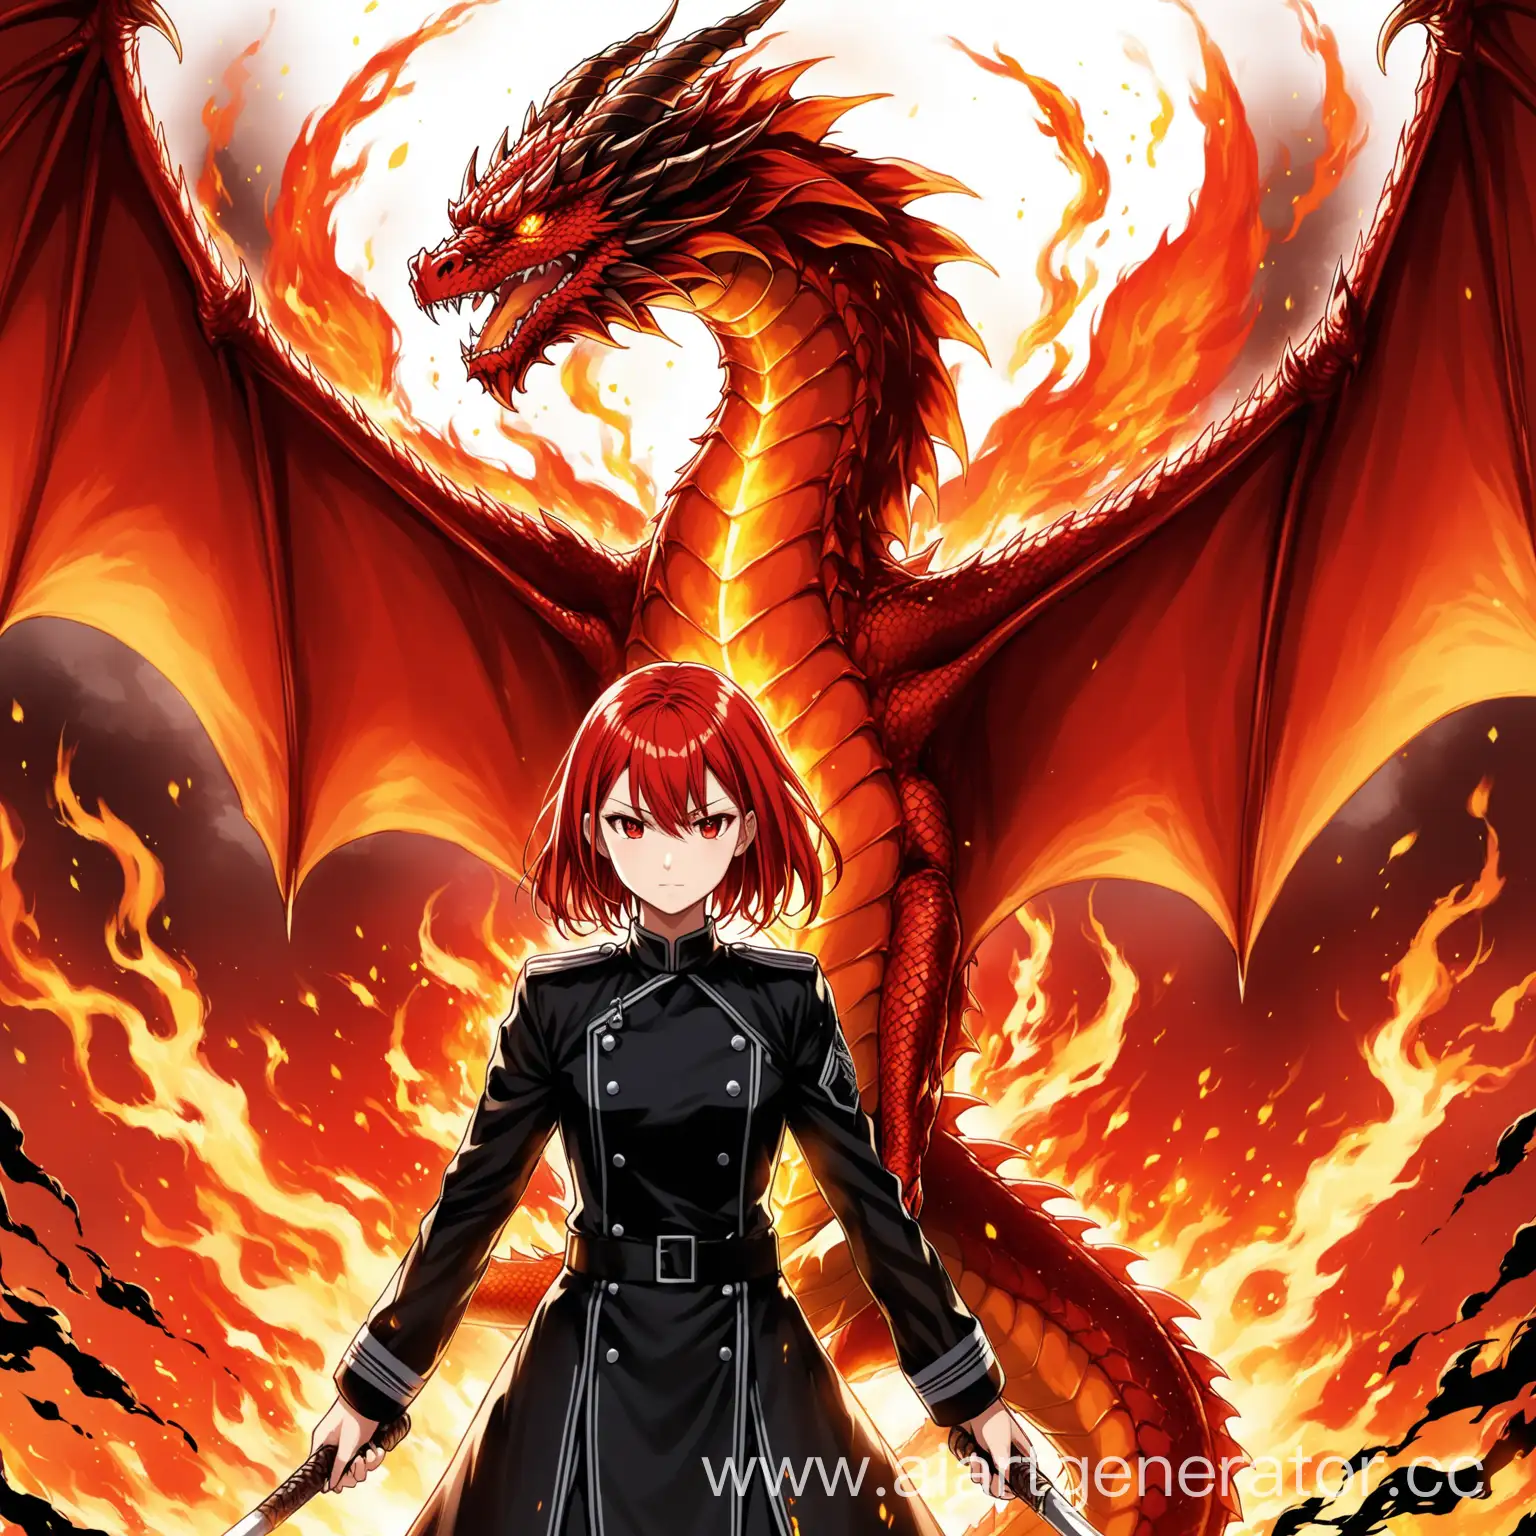 девочка 16 лет с короткими красными волосами и алыми глазами одетая в черную форму а позади девушки стоит огненный красный дракон